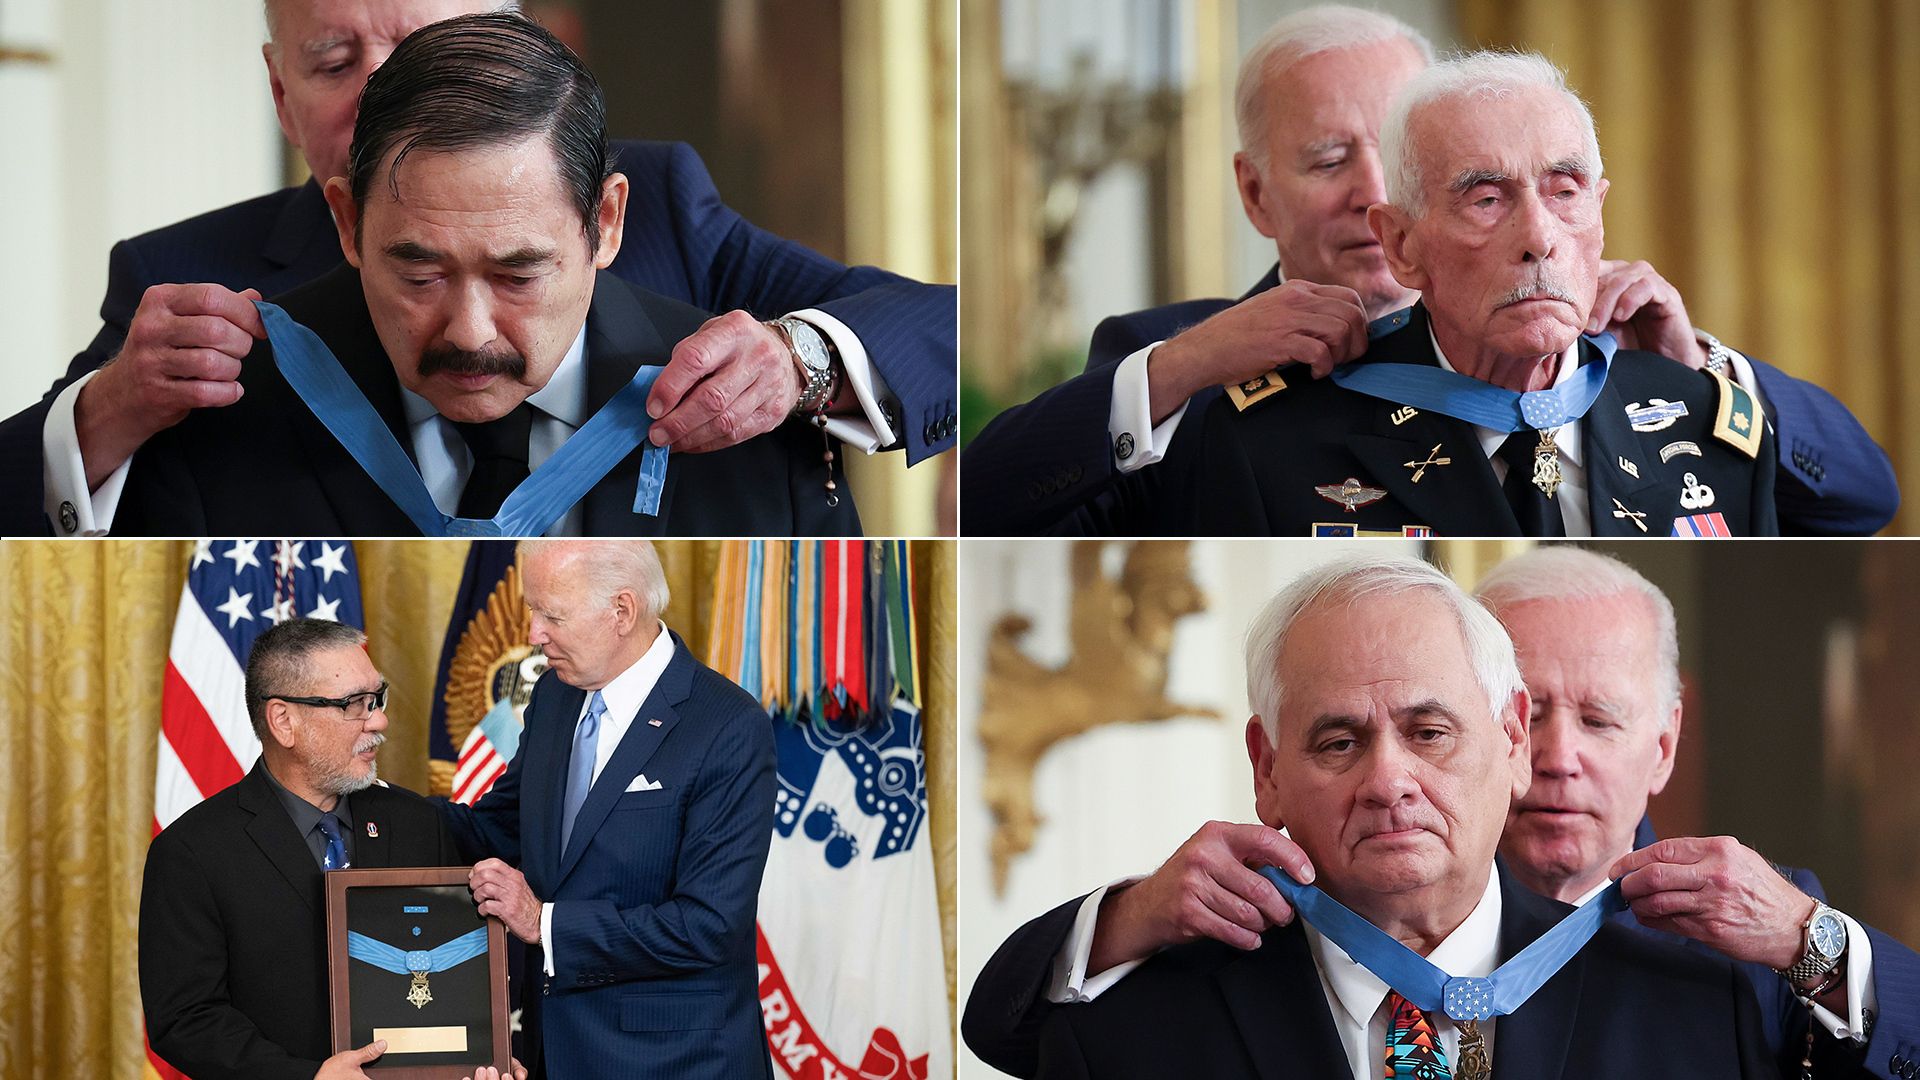 photos of the 4 men receiving the award